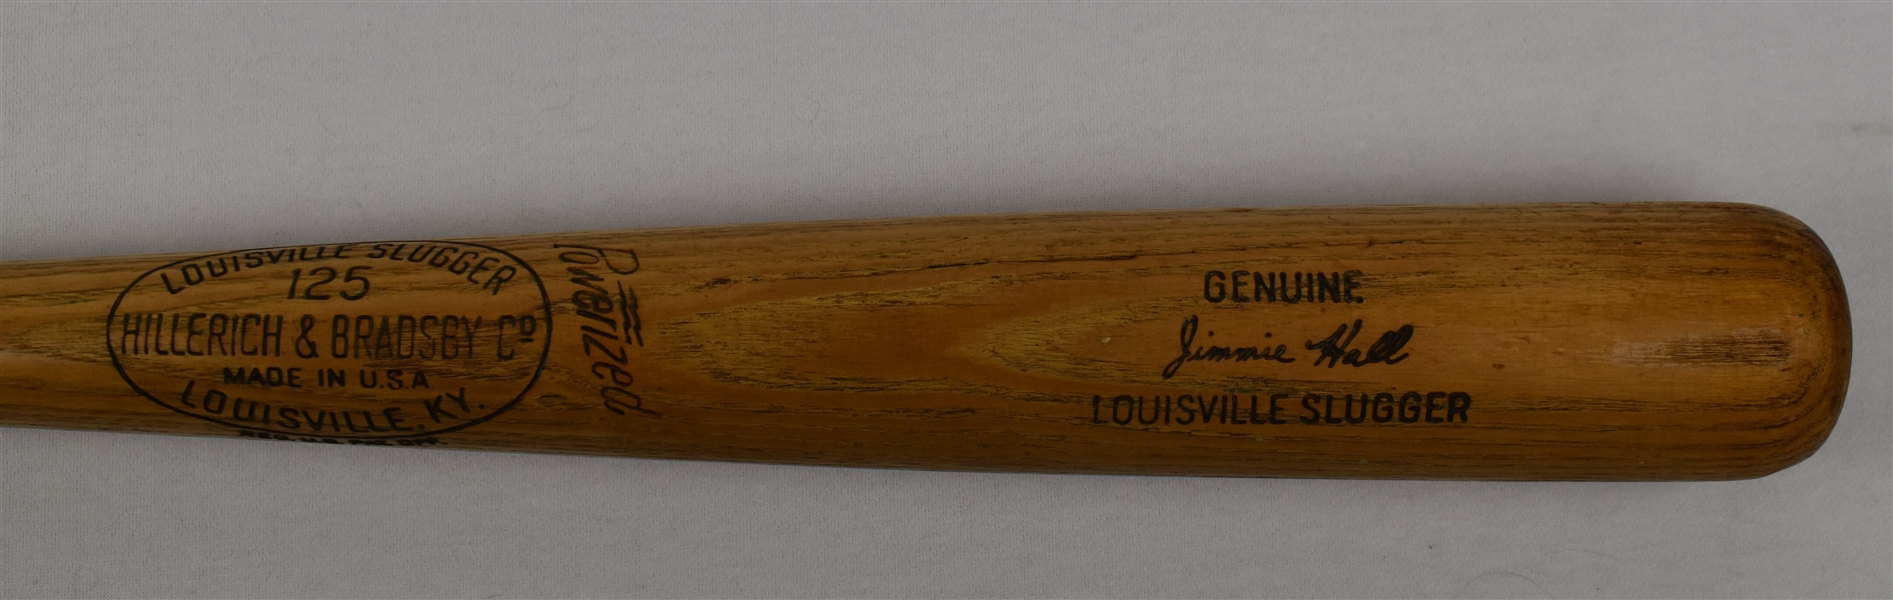 Jimmie Hall c. 1963-64 Minnesota Twins Game Used Bat 